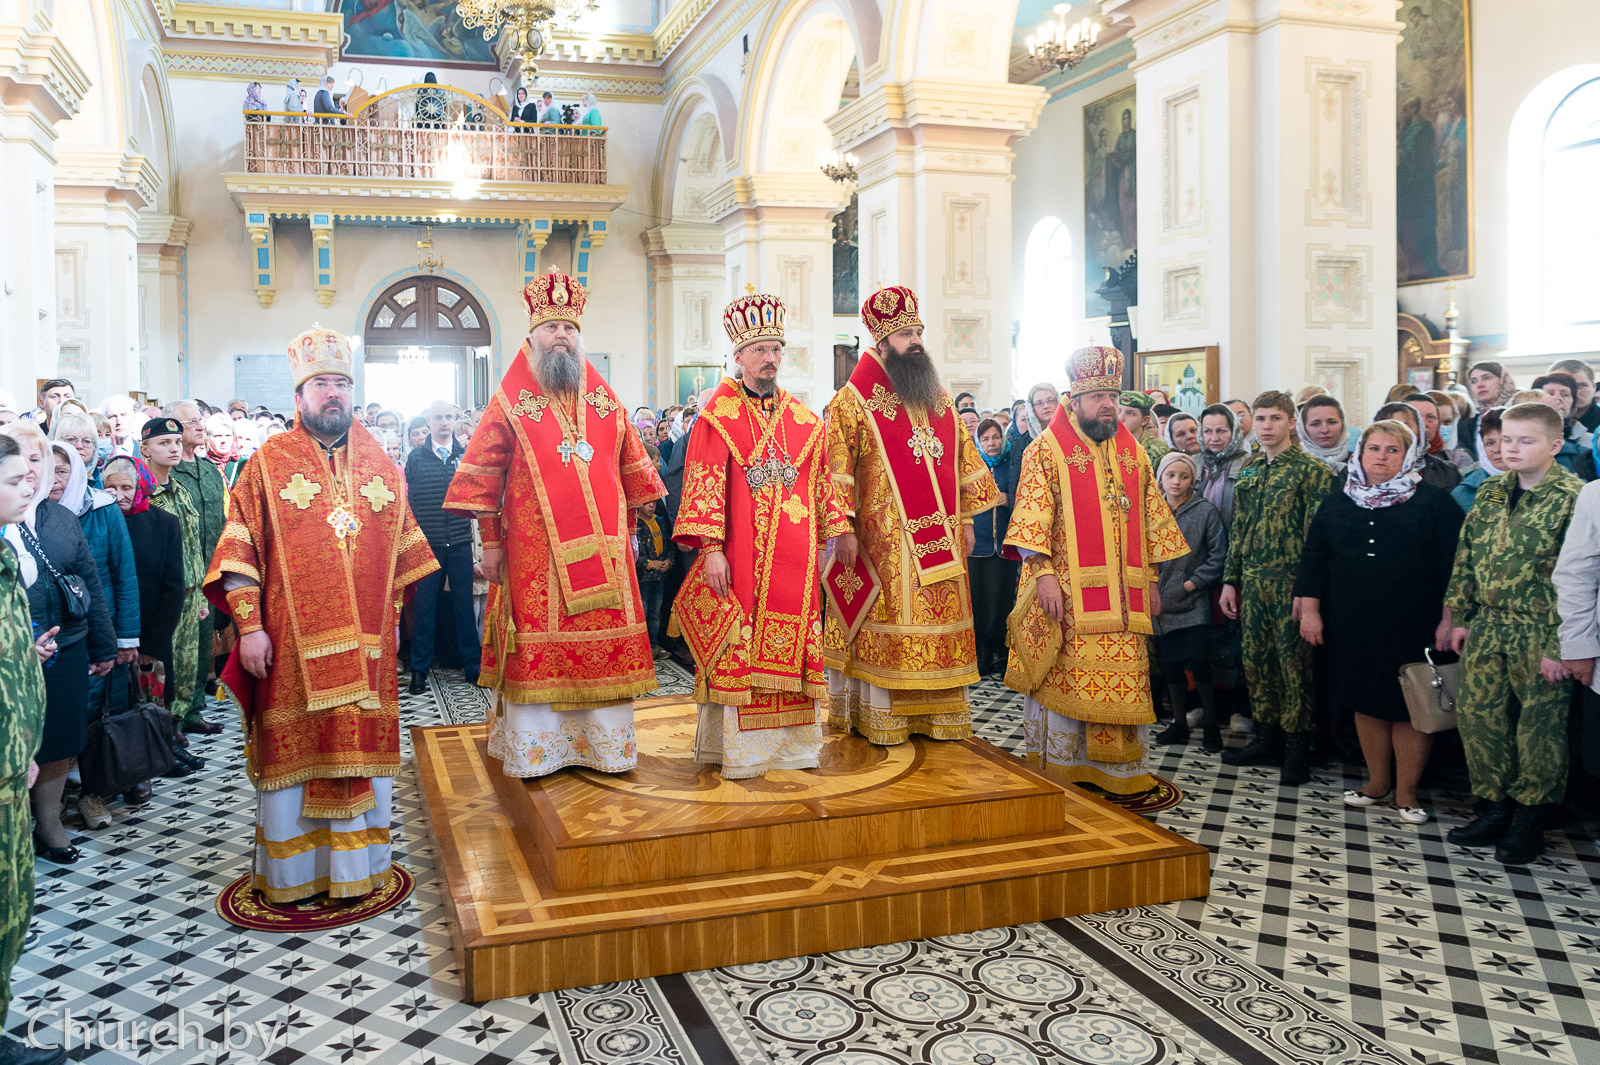 Епископ Серафим принял участие в торжествах, посвященных 30-летию Гродненской епархии